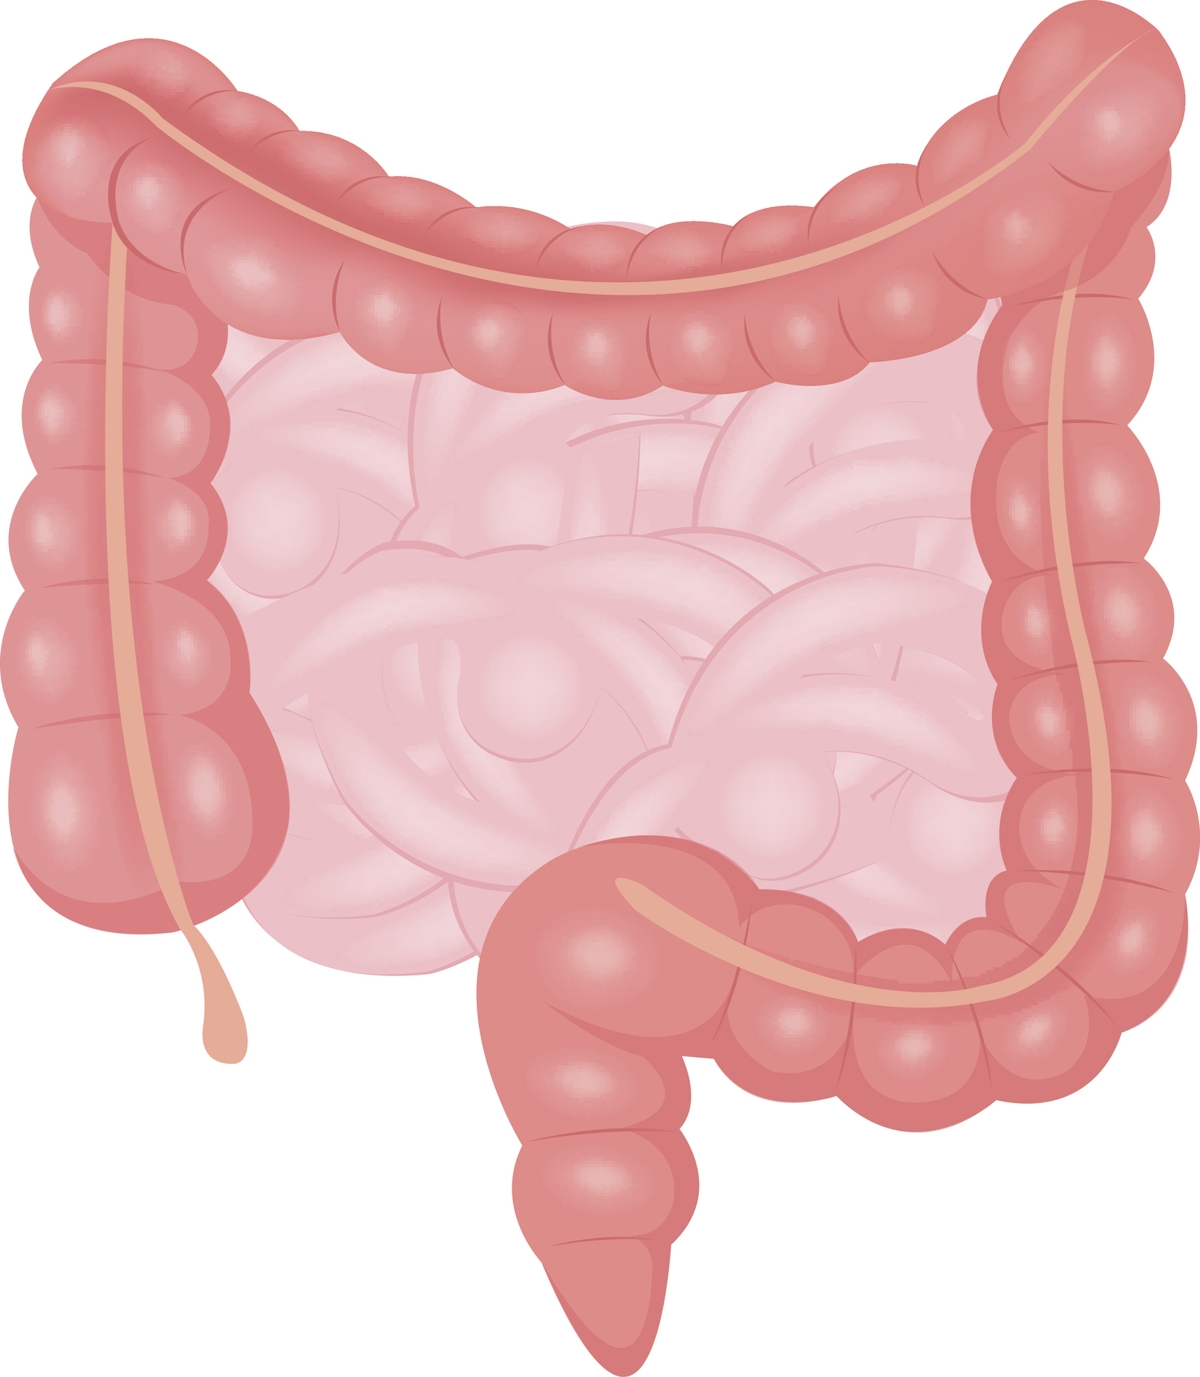 Large Intestine Anatomy - Bodytomy